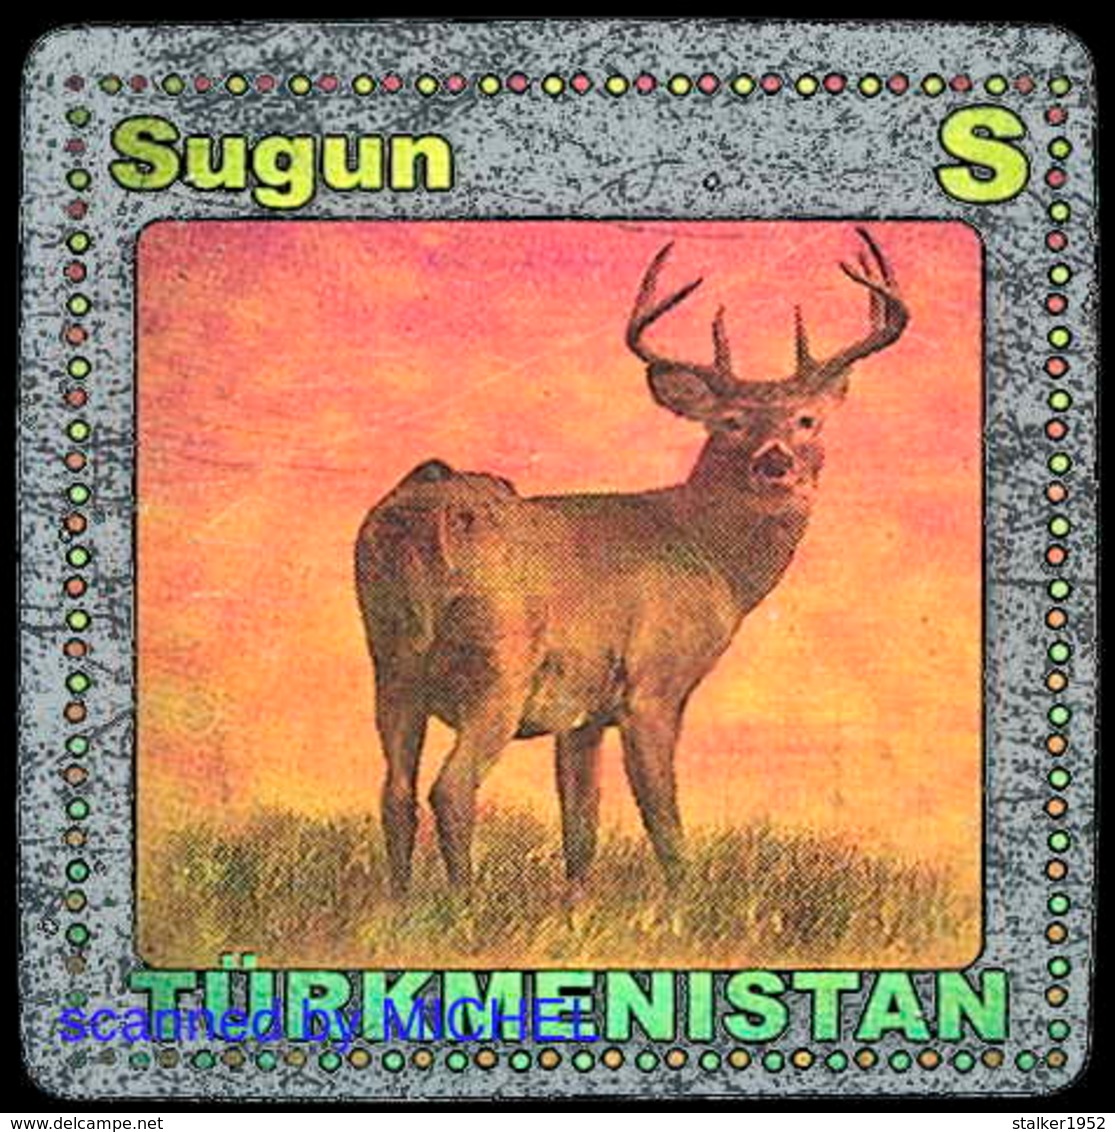 Turkmenistan 2008 Mi 240-246+247-253+254-260 Fauna. Hologram foil, self-adhesive / Fauna. Hologrammfolie, selbstklebend